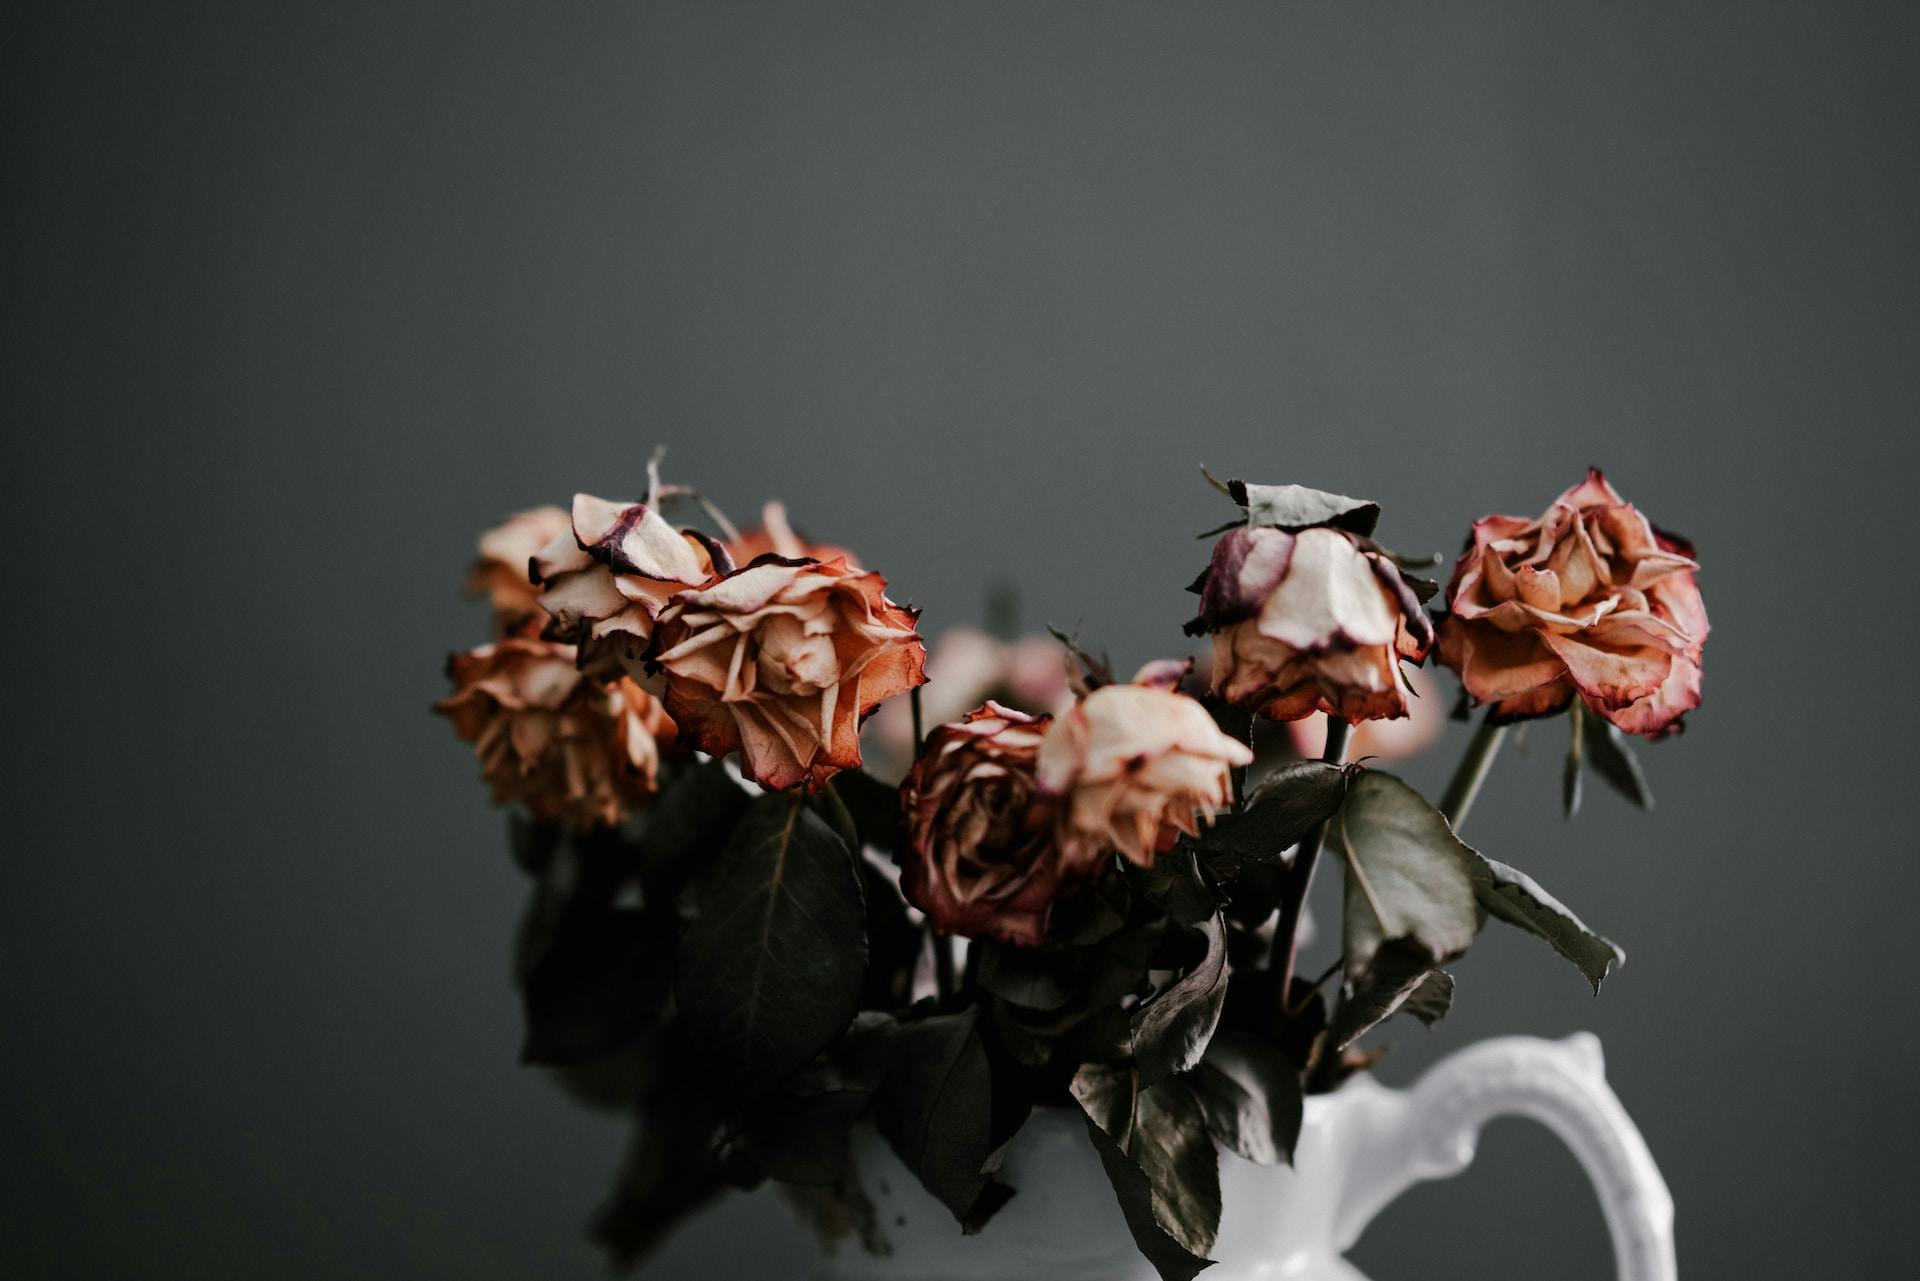 wilted roses - Photo by Annie Spratt on Unsplash